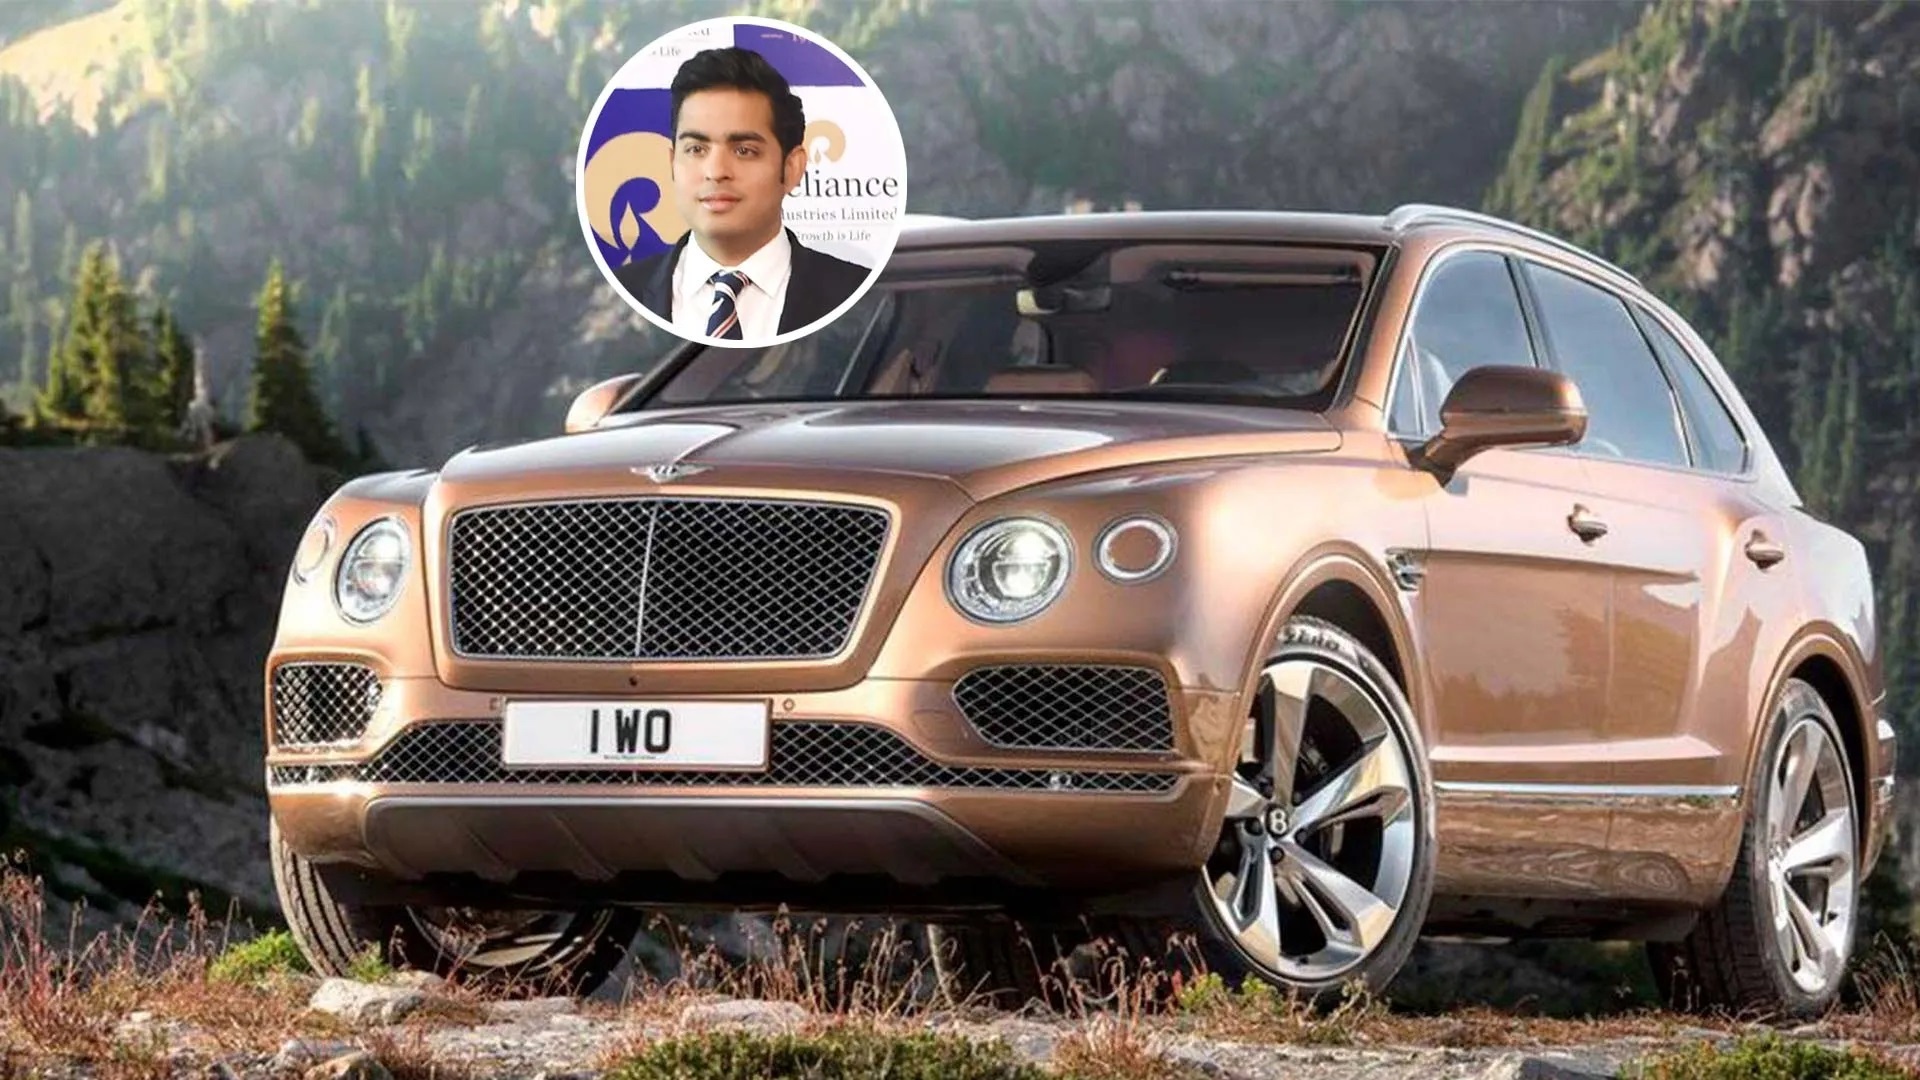 Akash Ambani sở hữu nhiều mẫu xe hơi sang trọng với mức giá đáng kinh ngạc. Theo DNA India, chiếc SUV Lamborghini Urus trị giá khoảng 483.000 USD là một trong số "xế cưng" của con trai lớn nhà Ambani khi anh thường lái nó quanh Mumbai. Anh cũng yêu thích chiếc Range Rover Vogue có giá 217.000-480.000 USD hay chiếc Bentley Bentayga hơn 480.000 USD (Ảnh: GQ).